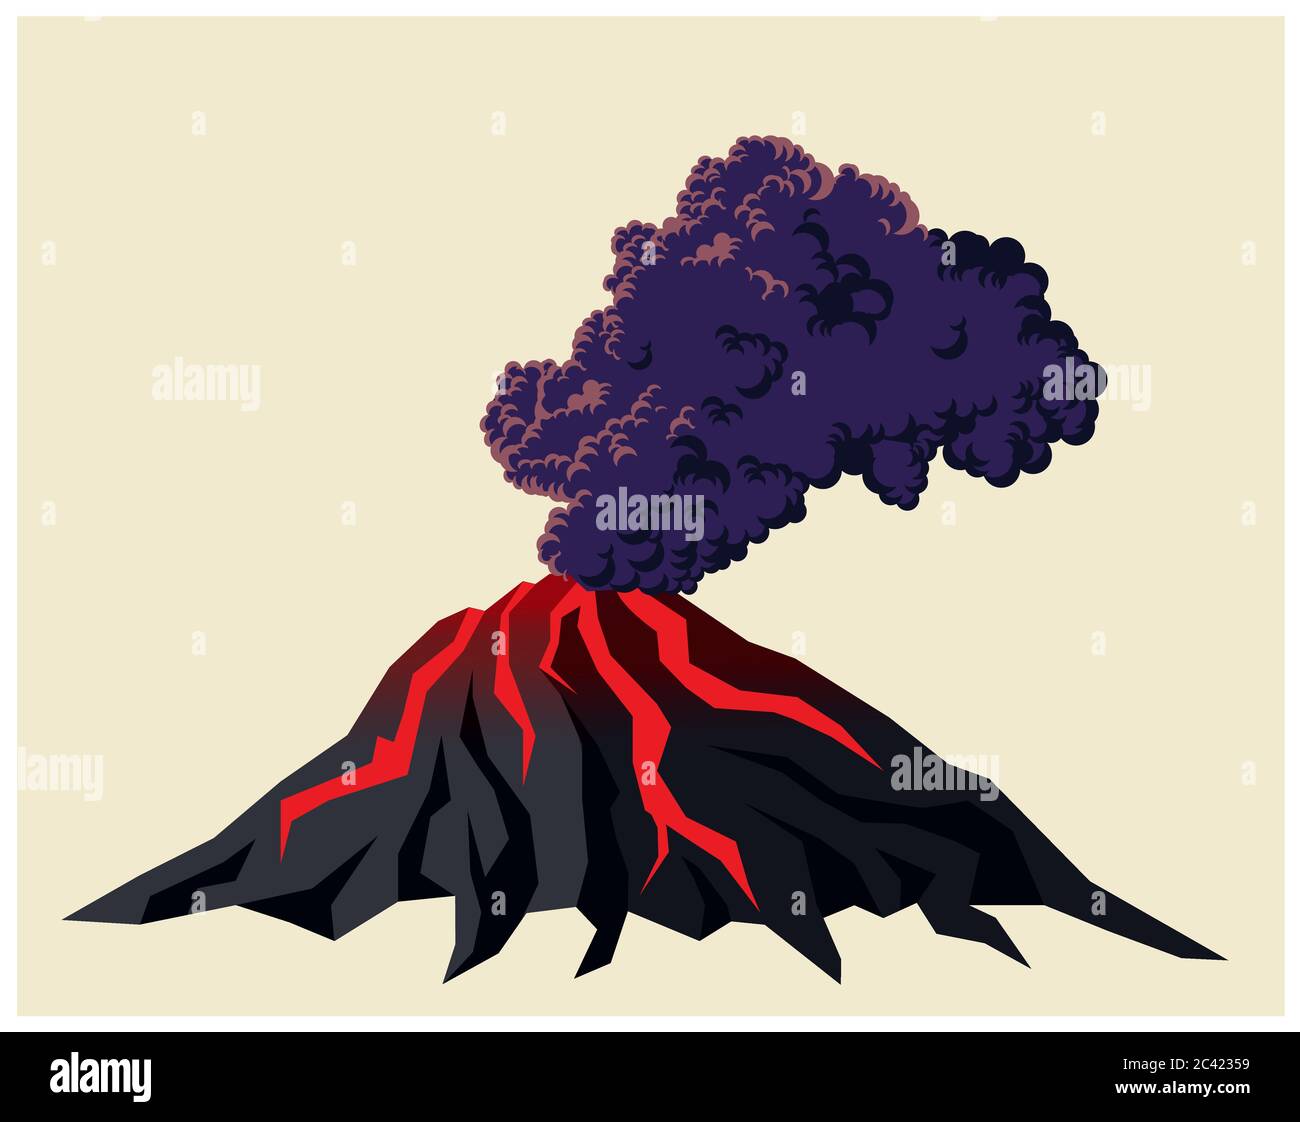 Ilustración estilizada de un volcán fumador con nubes negras de humo Ilustración del Vector